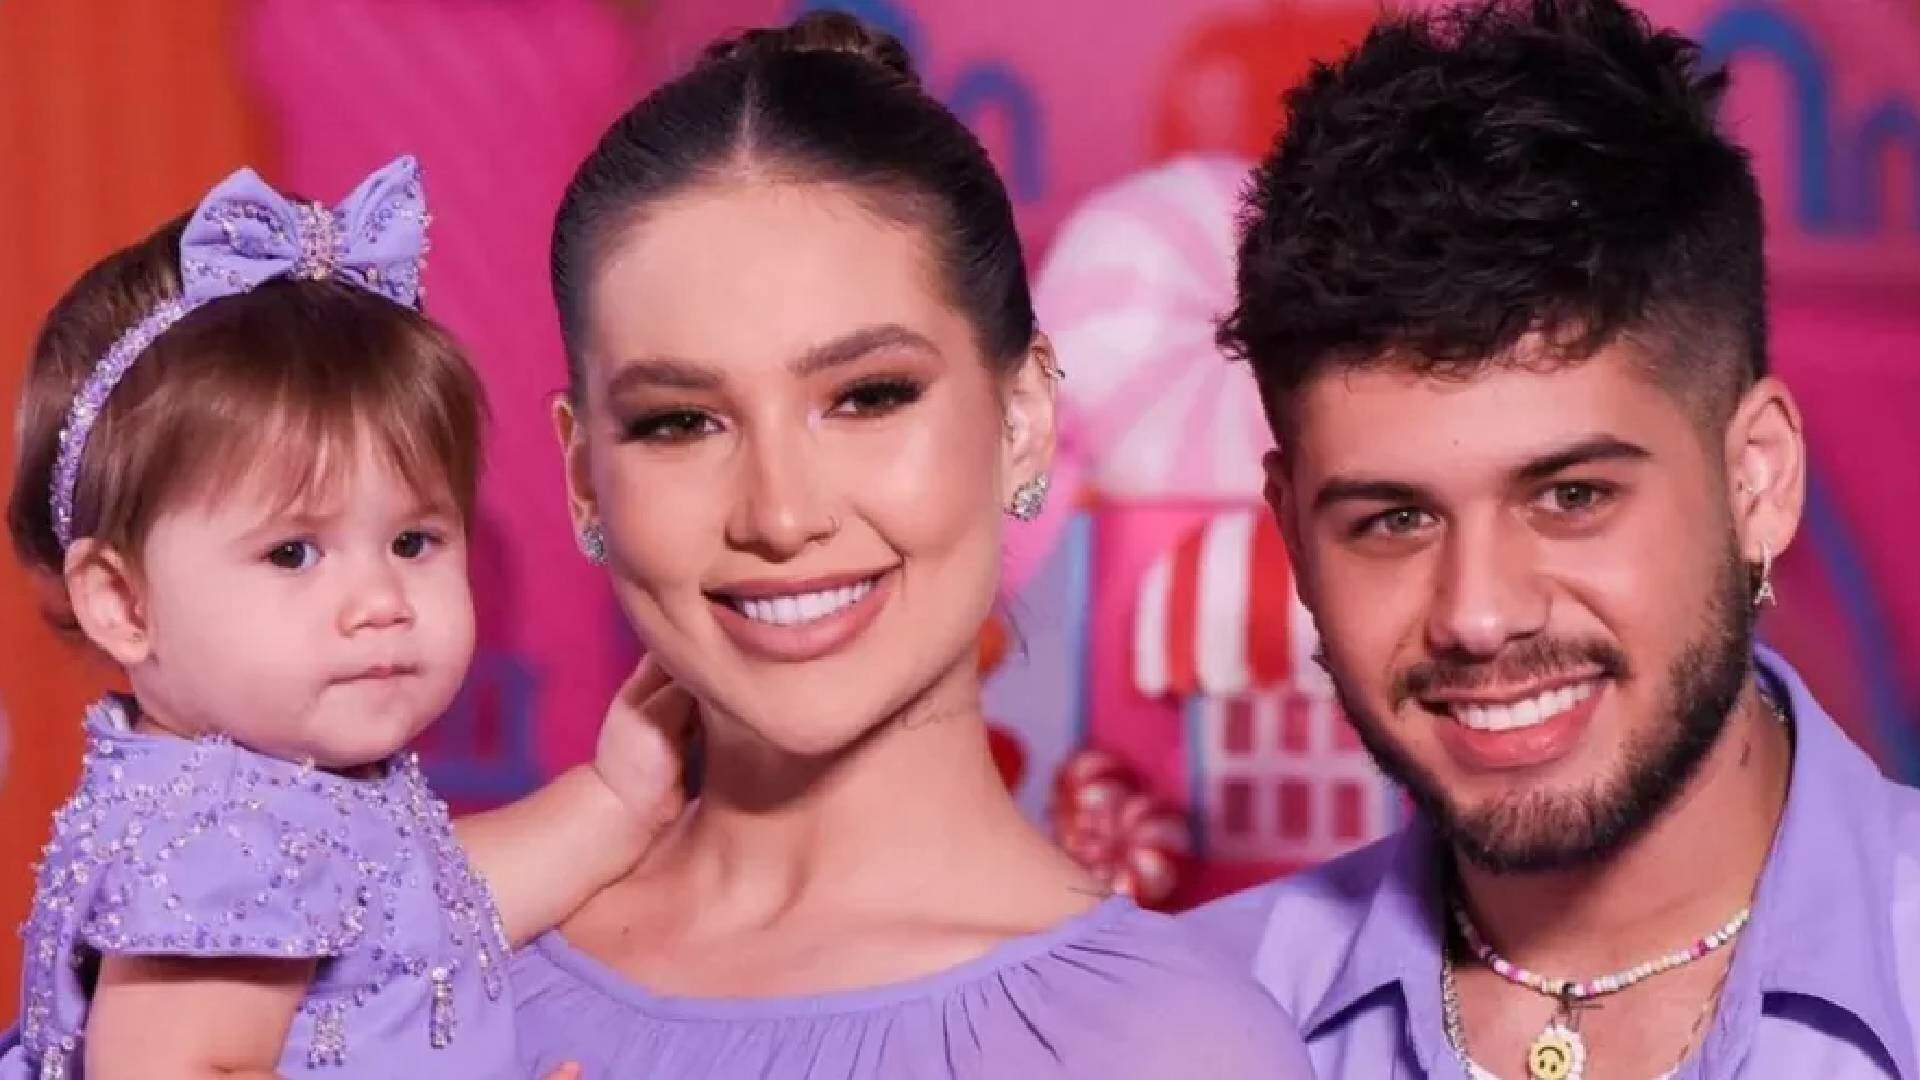 Filha de Zé Felipe e Virginia ganha primeira festa de aniversário com várias atrações de peso - Metropolitana FM